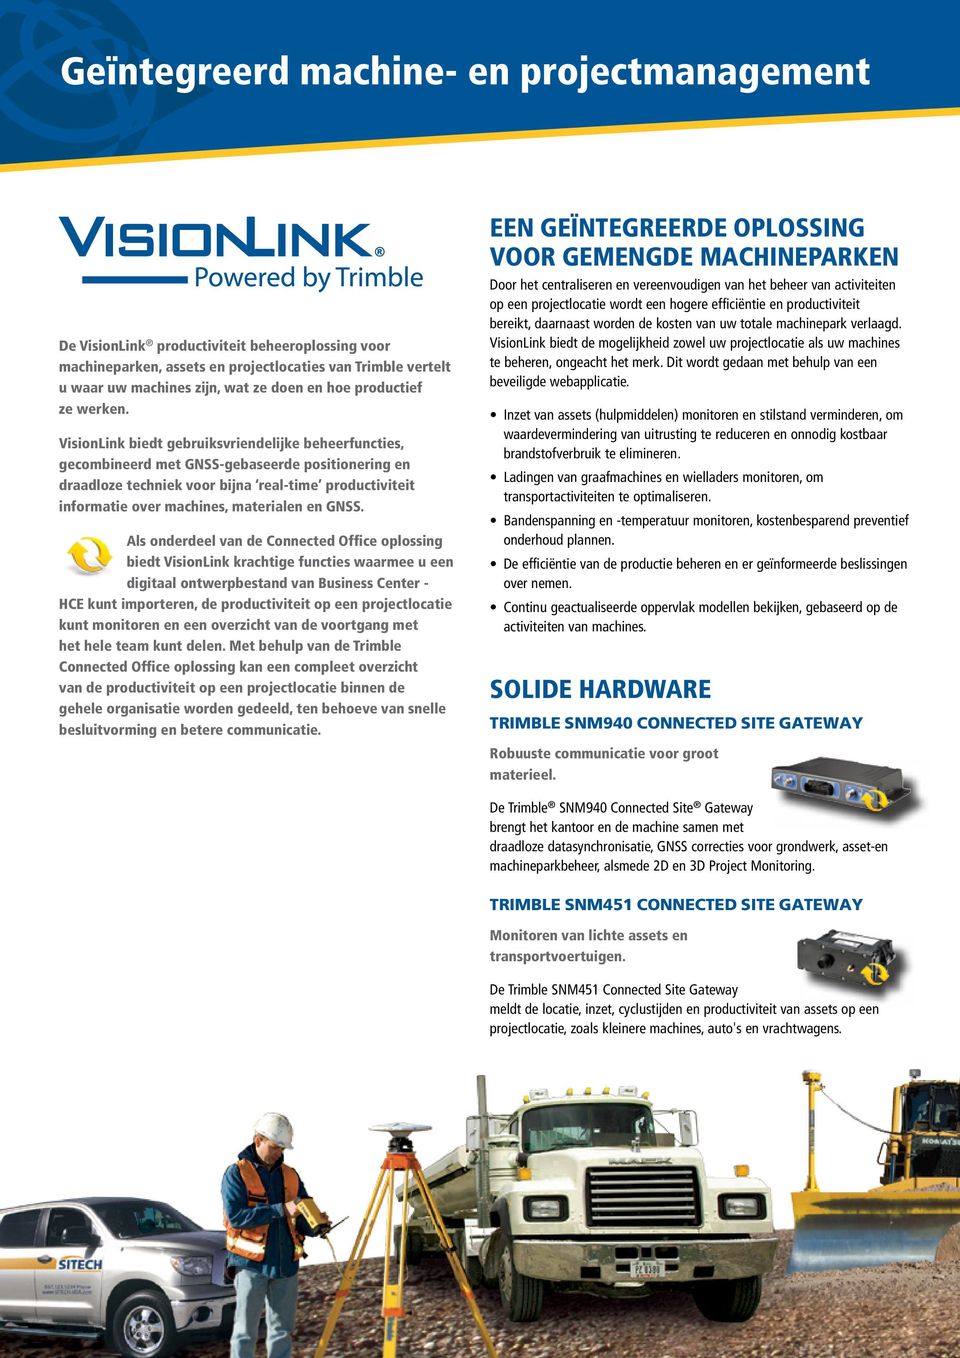 VisionLink biedt gebruiksvriendelijke beheerfuncties, gecombineerd met GNSS-gebaseerde positionering en draadloze techniek voor bijna real-time productiviteit informatie over machines, materialen en